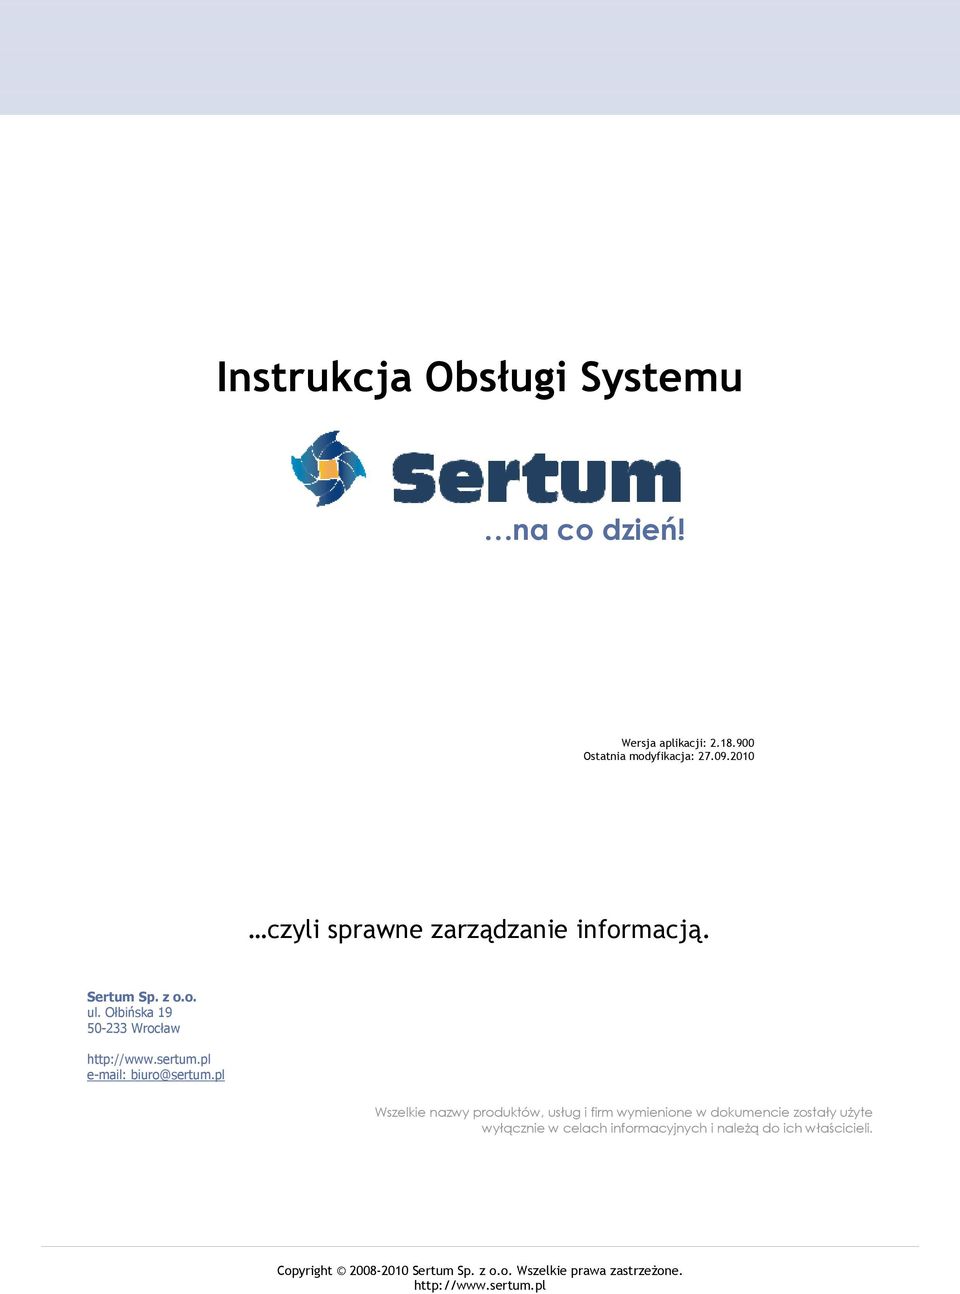 sertum.pl e-mail: biuro@sertum.